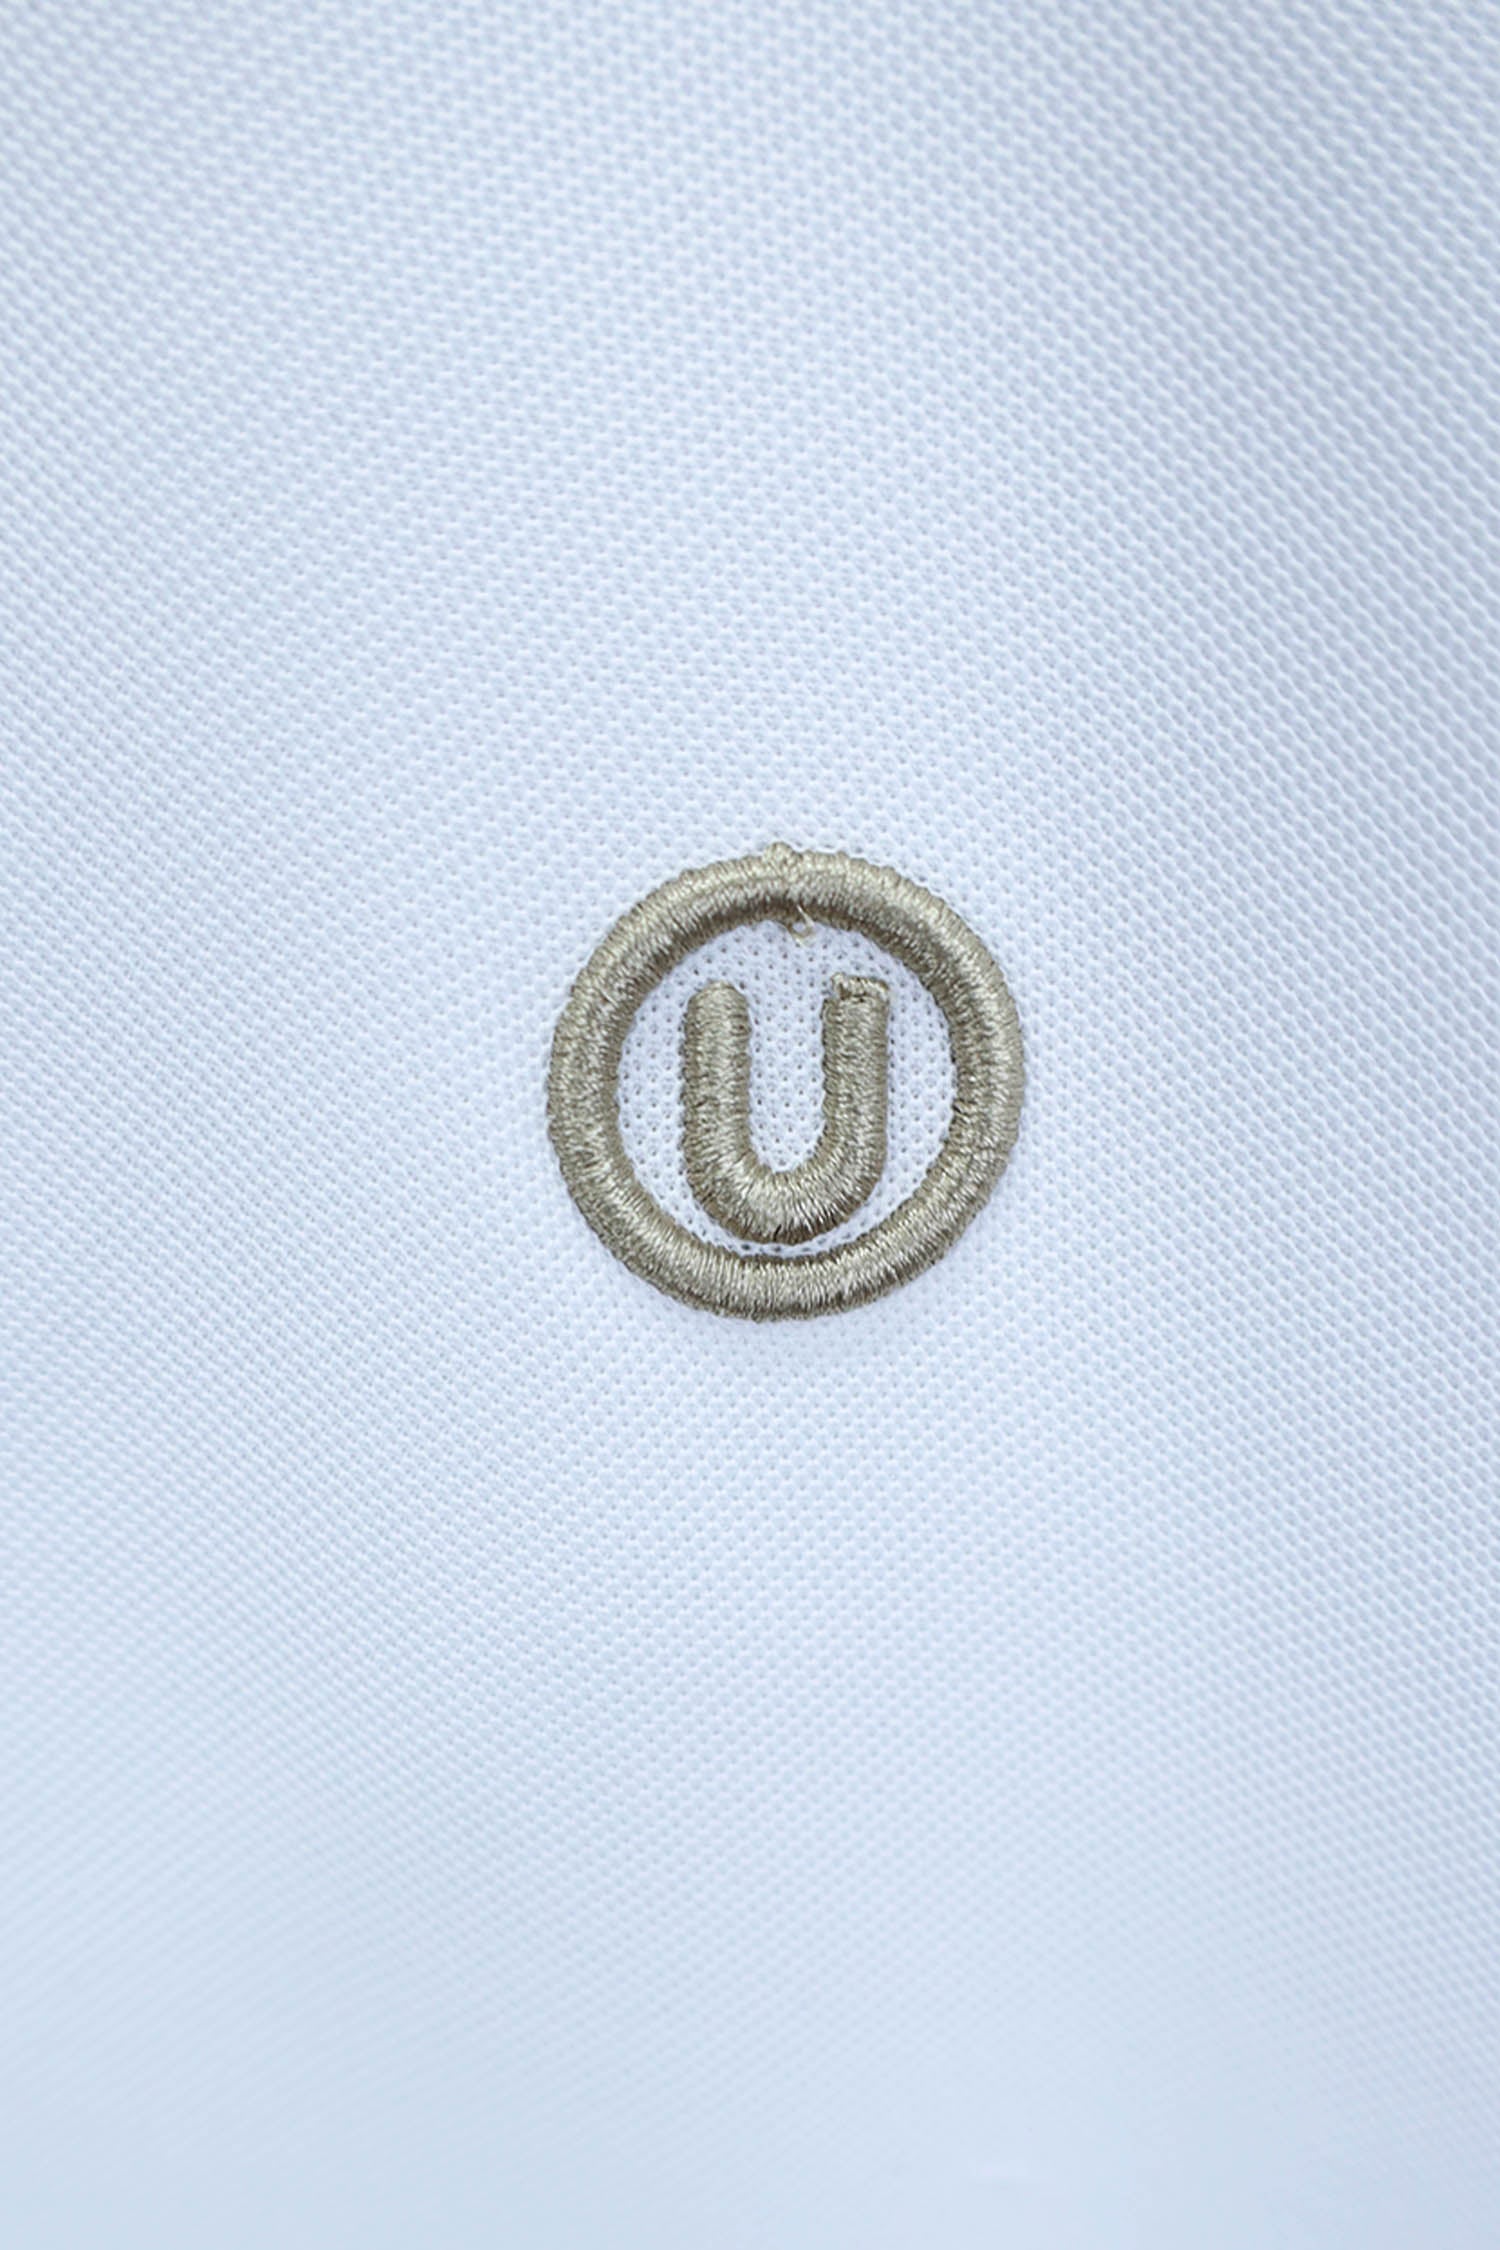 Embroidered Logo Men Polo Shirt